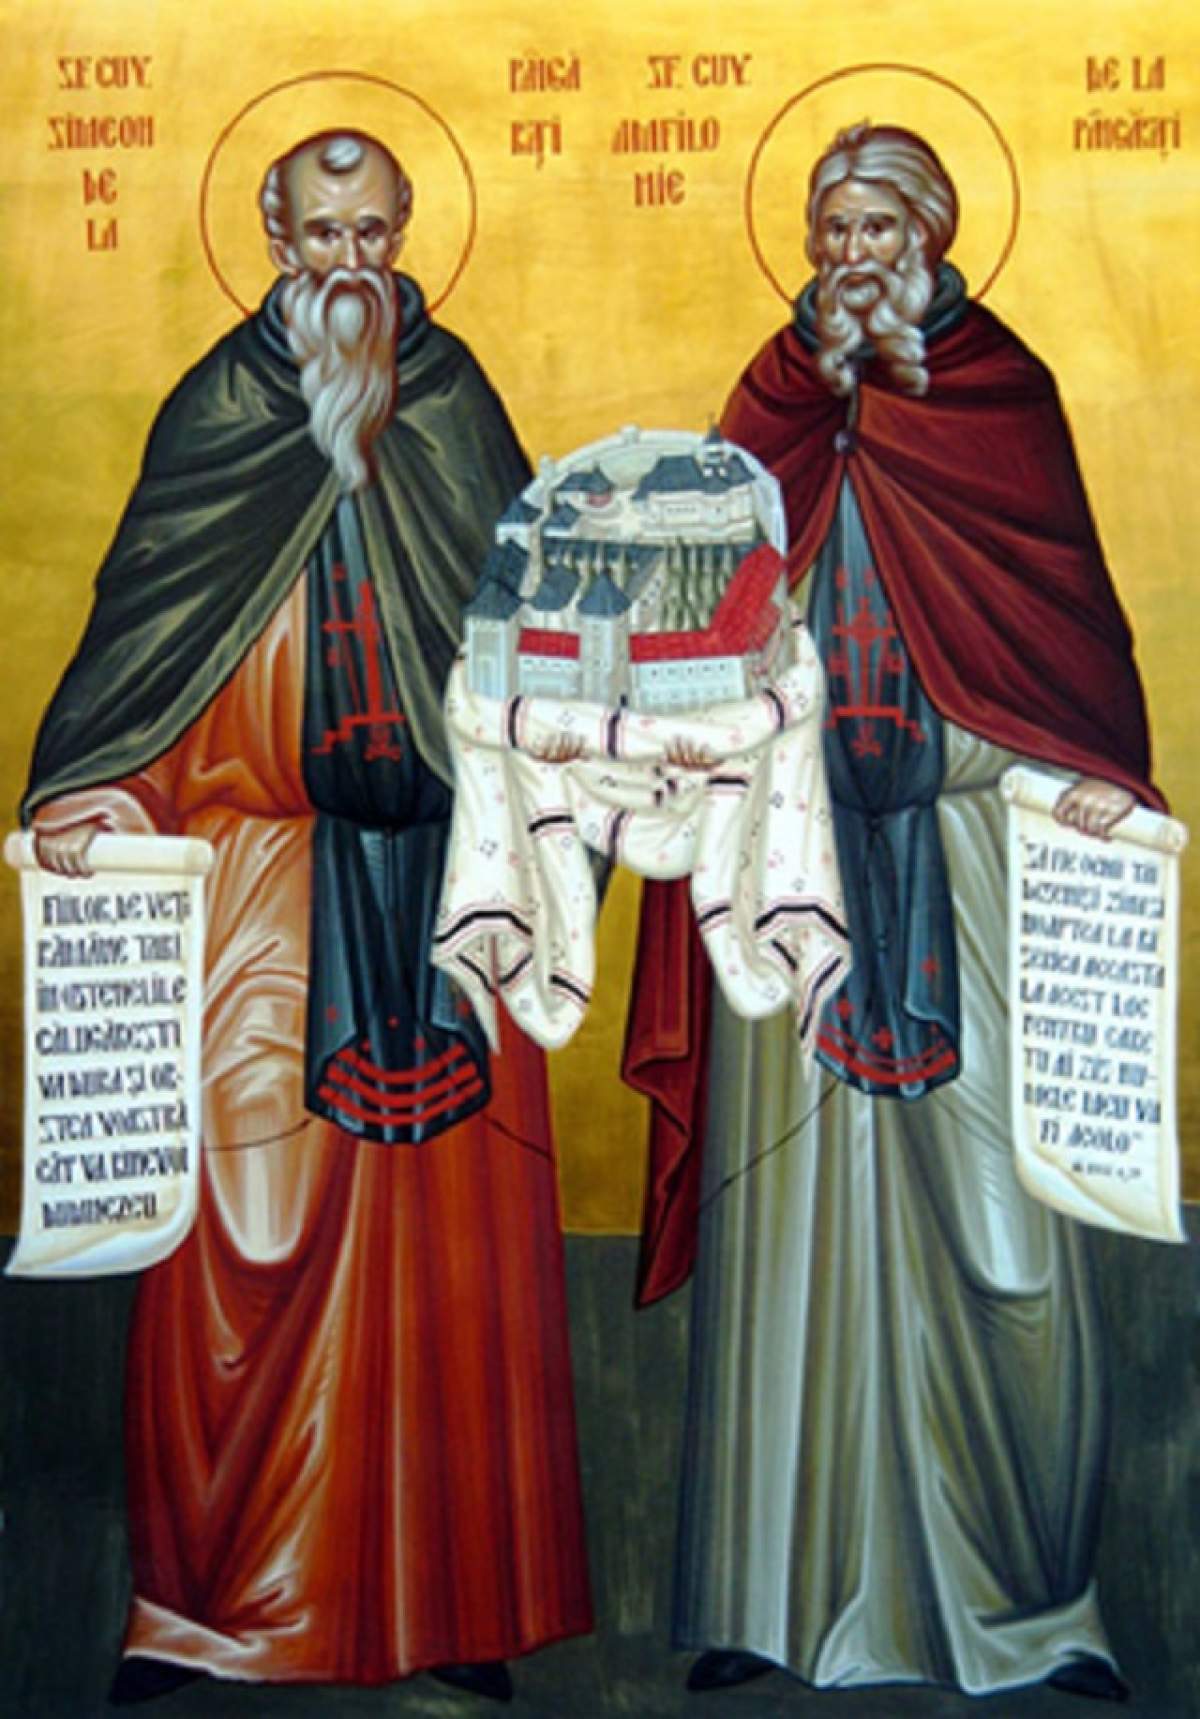 Sfinții Cuvioși Simeon și Ioan sunt pomeniți în calendarul creștin ortodox